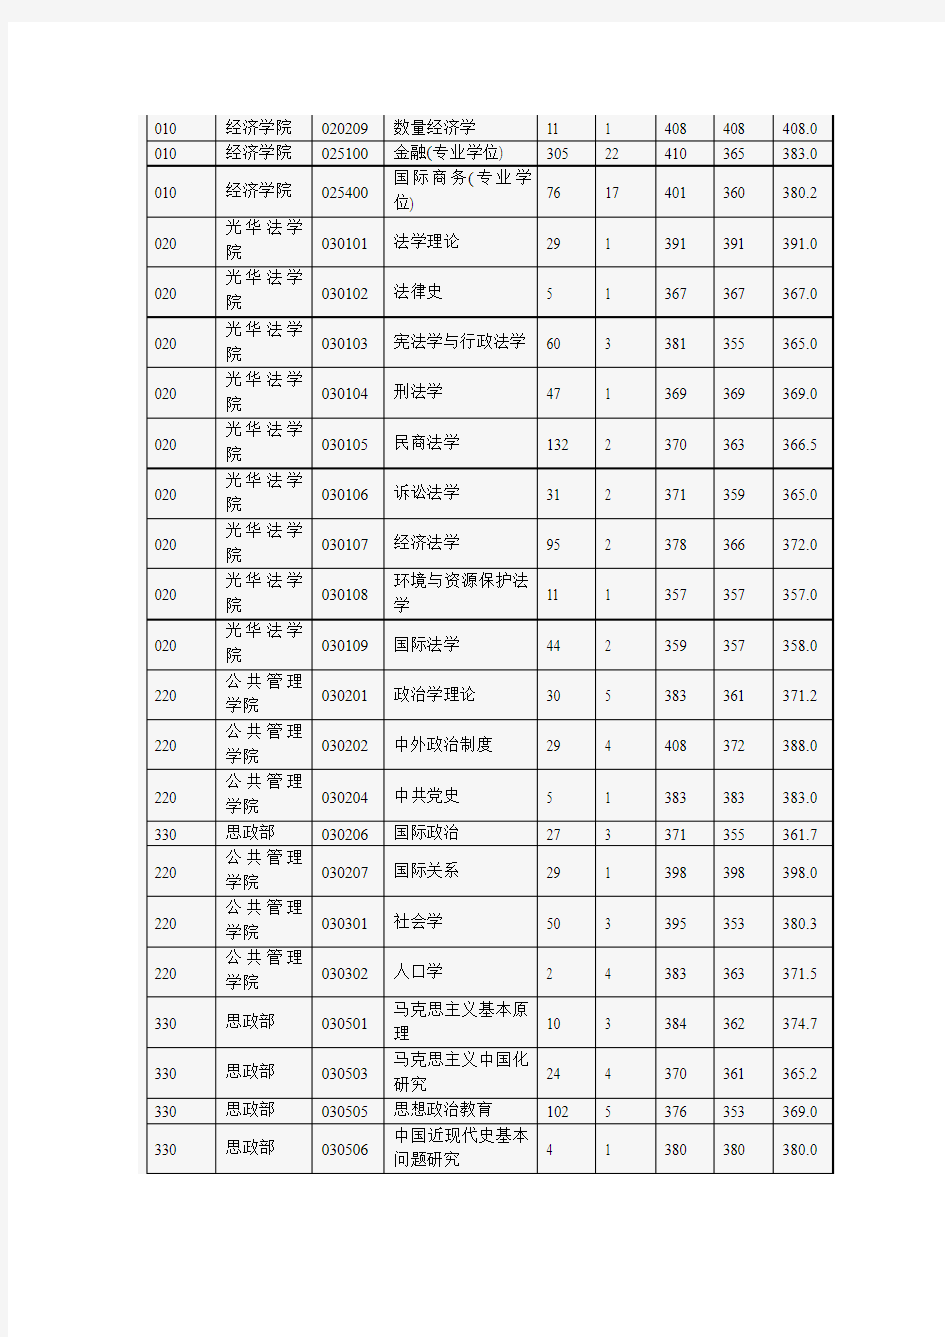 2012年浙江大学考研各专业报录比及平均分